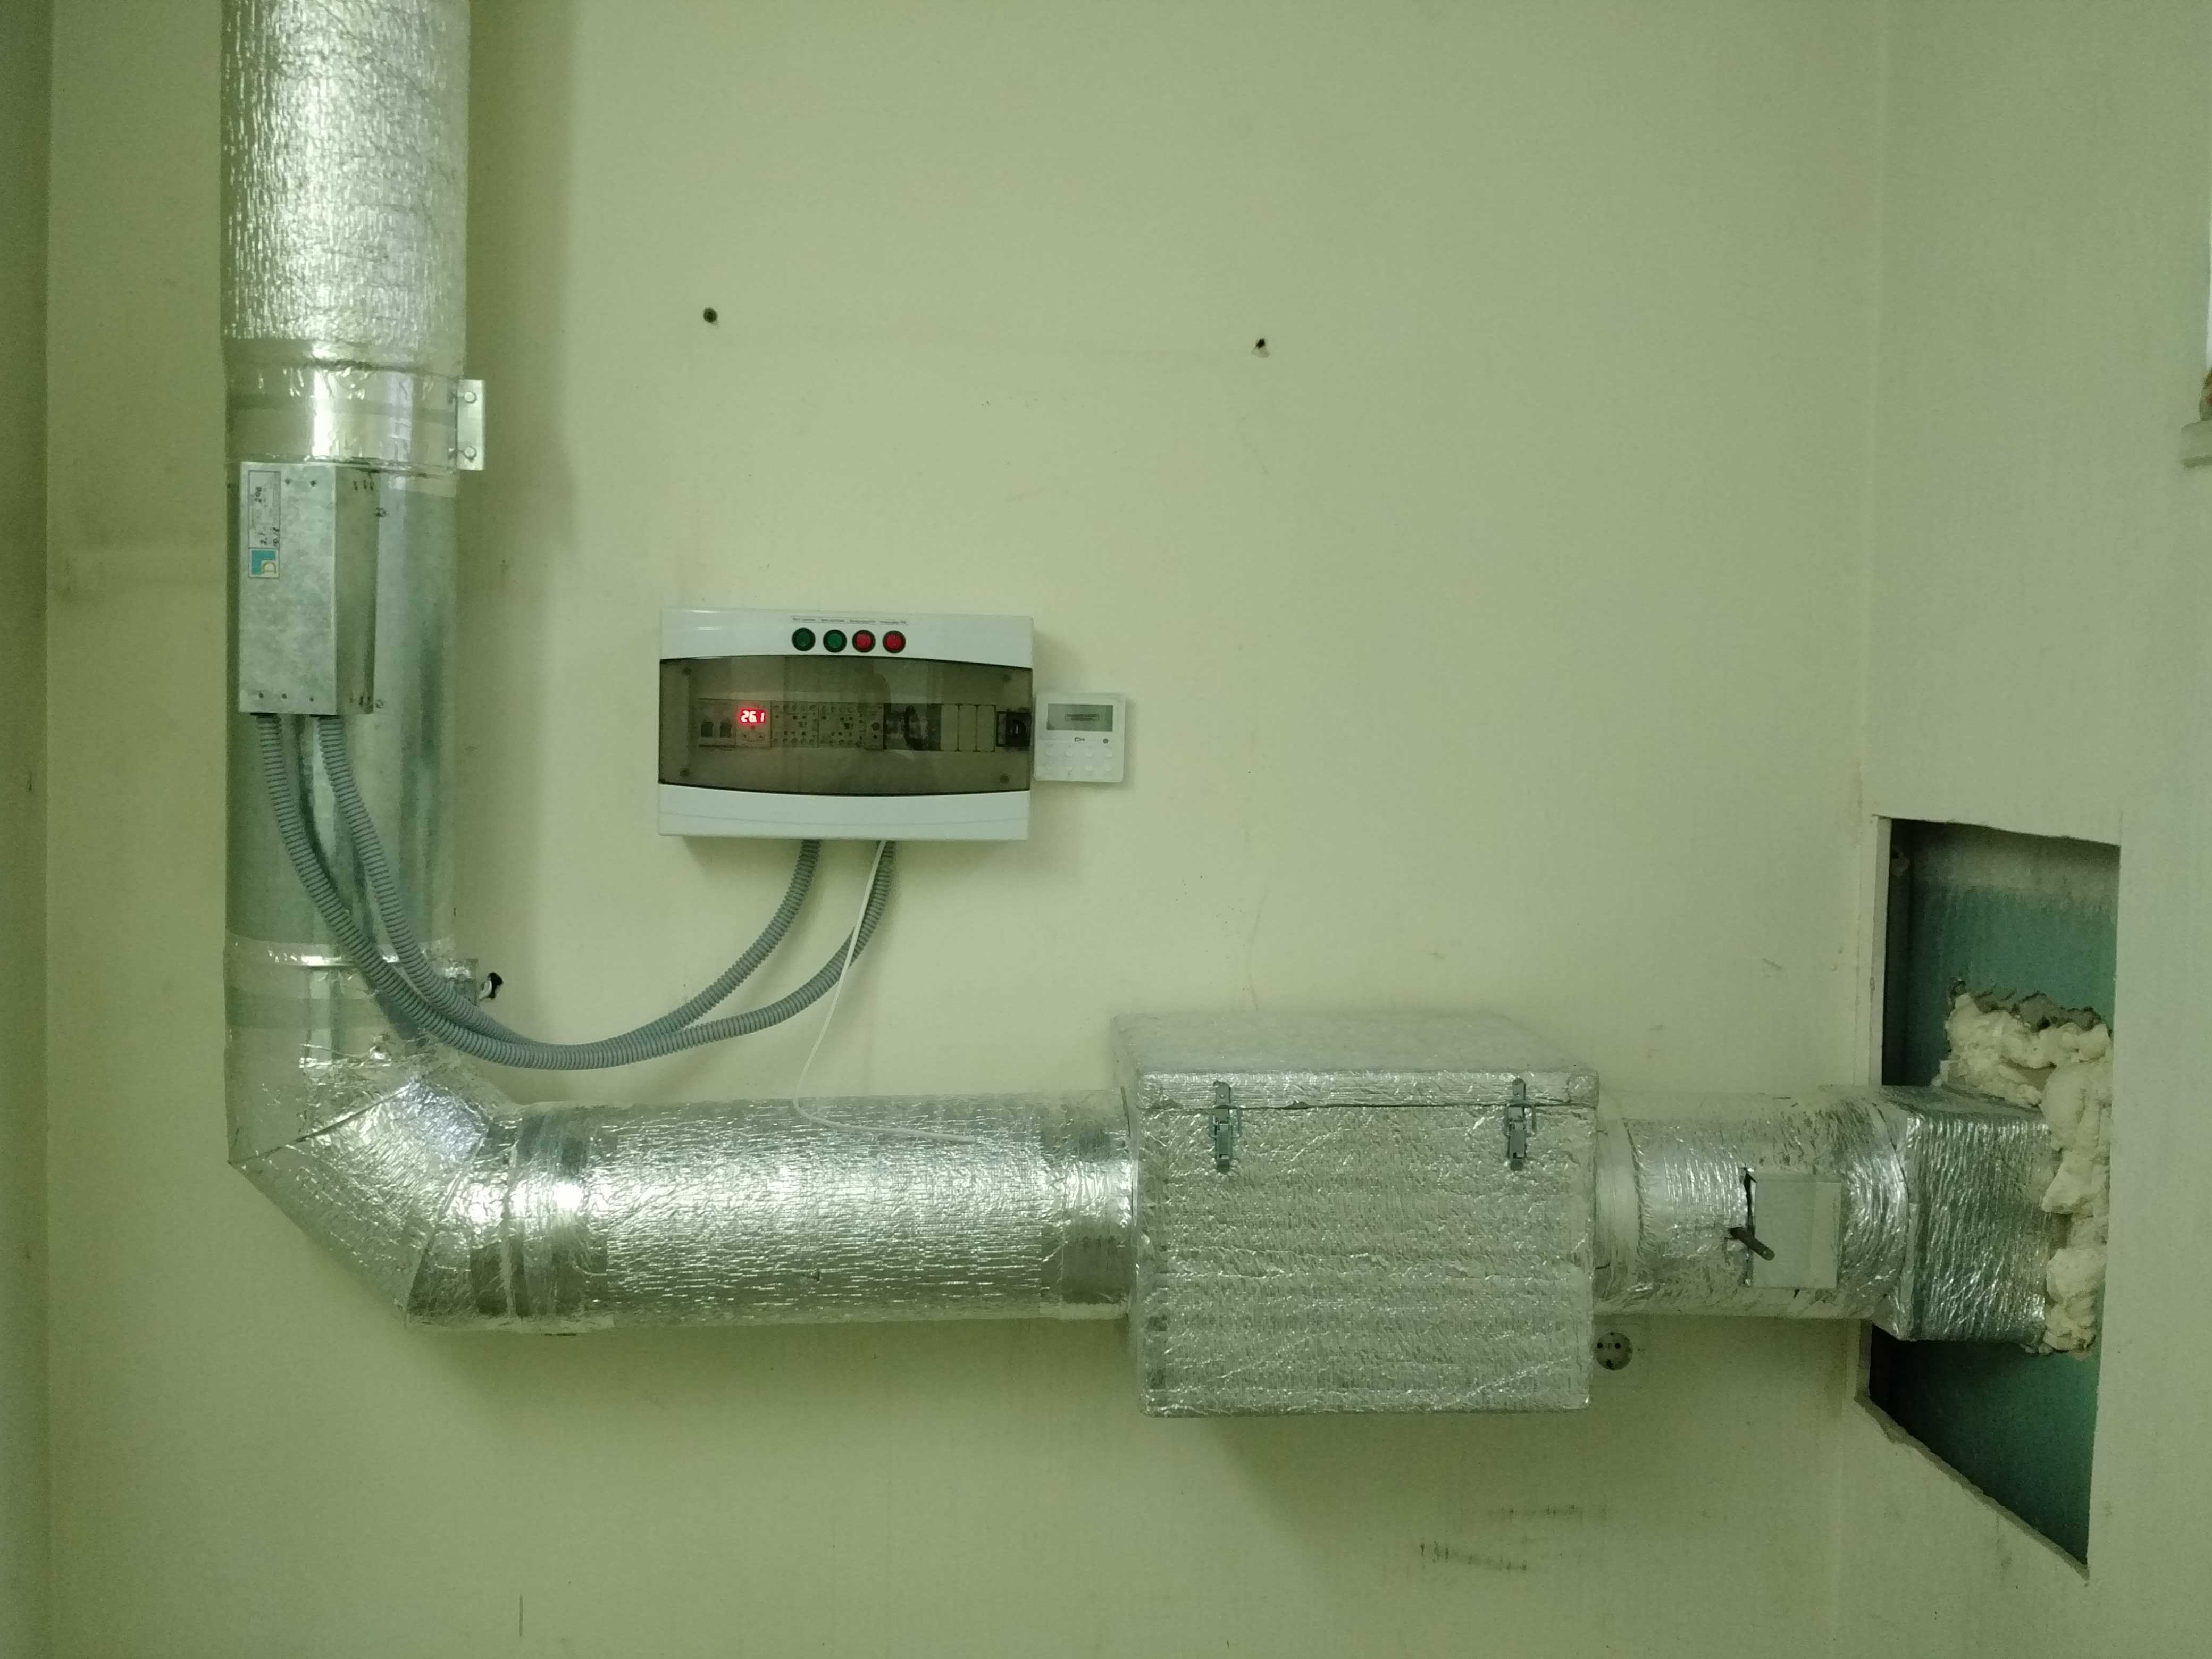 Подогрев приточного воздуха купить. Нагреватель воздуха для приточной вентиляции водяной. Система подогрева воздуха в приточной вентиляции. Приточка с подогревом 315. Электро подогрев вентиляции воздуха в приточной вентиляции.